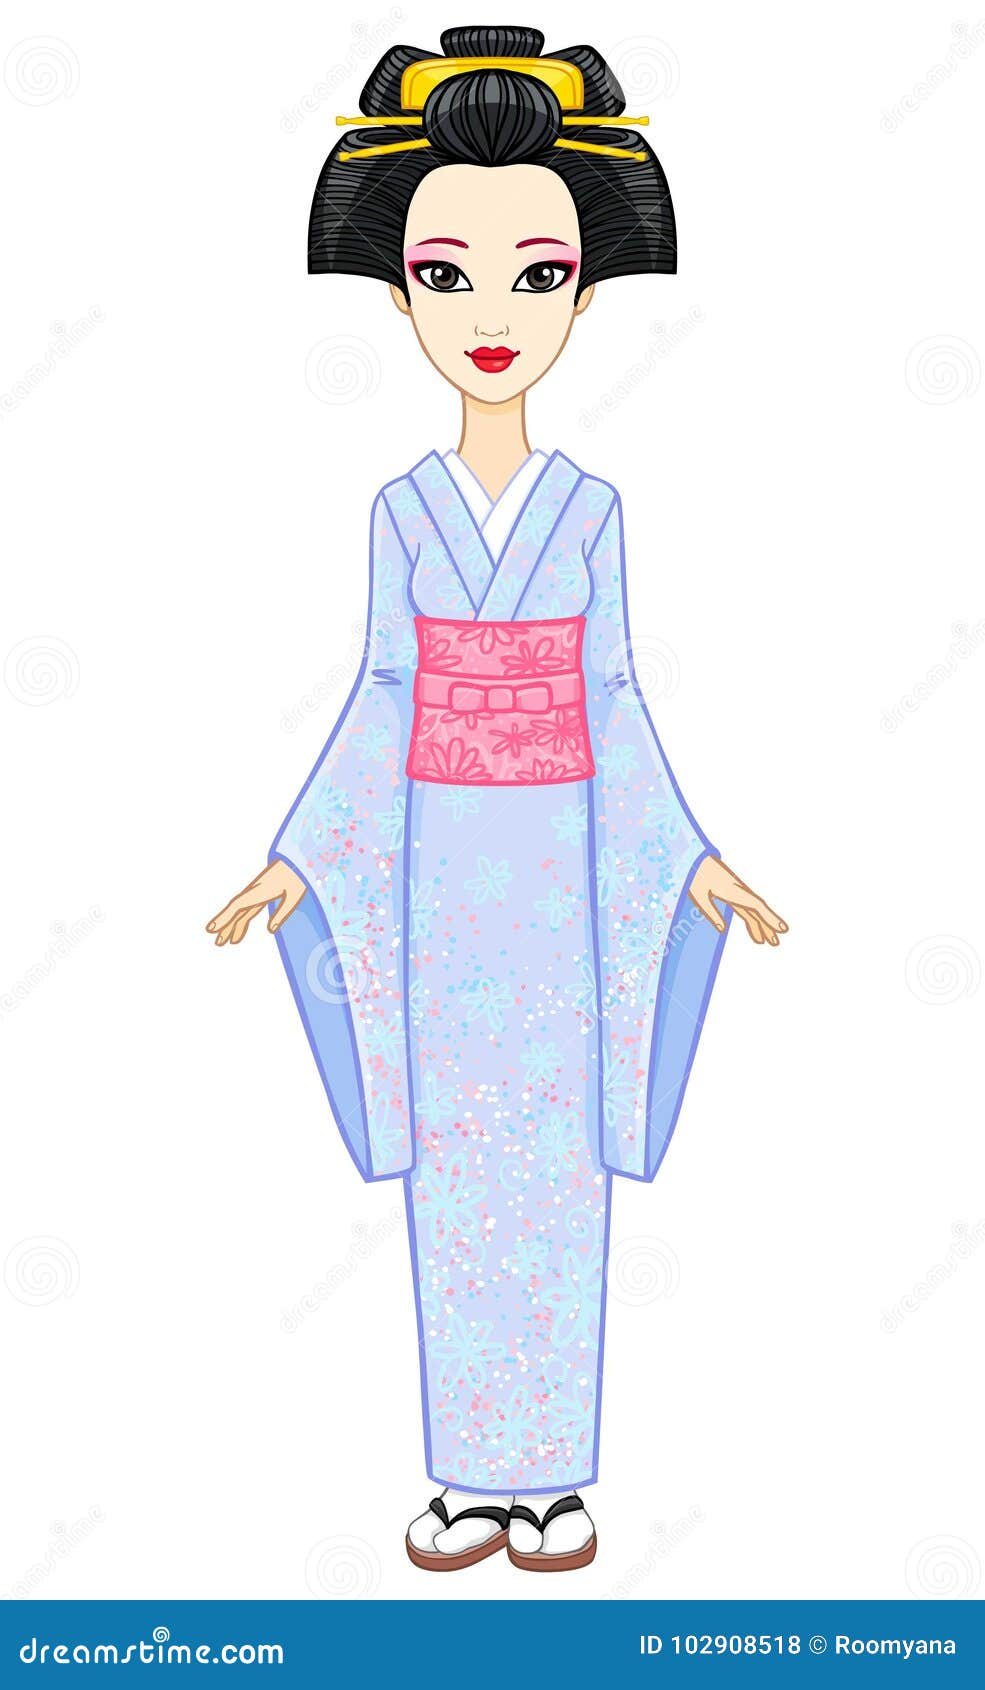 Pin on Kimono prints